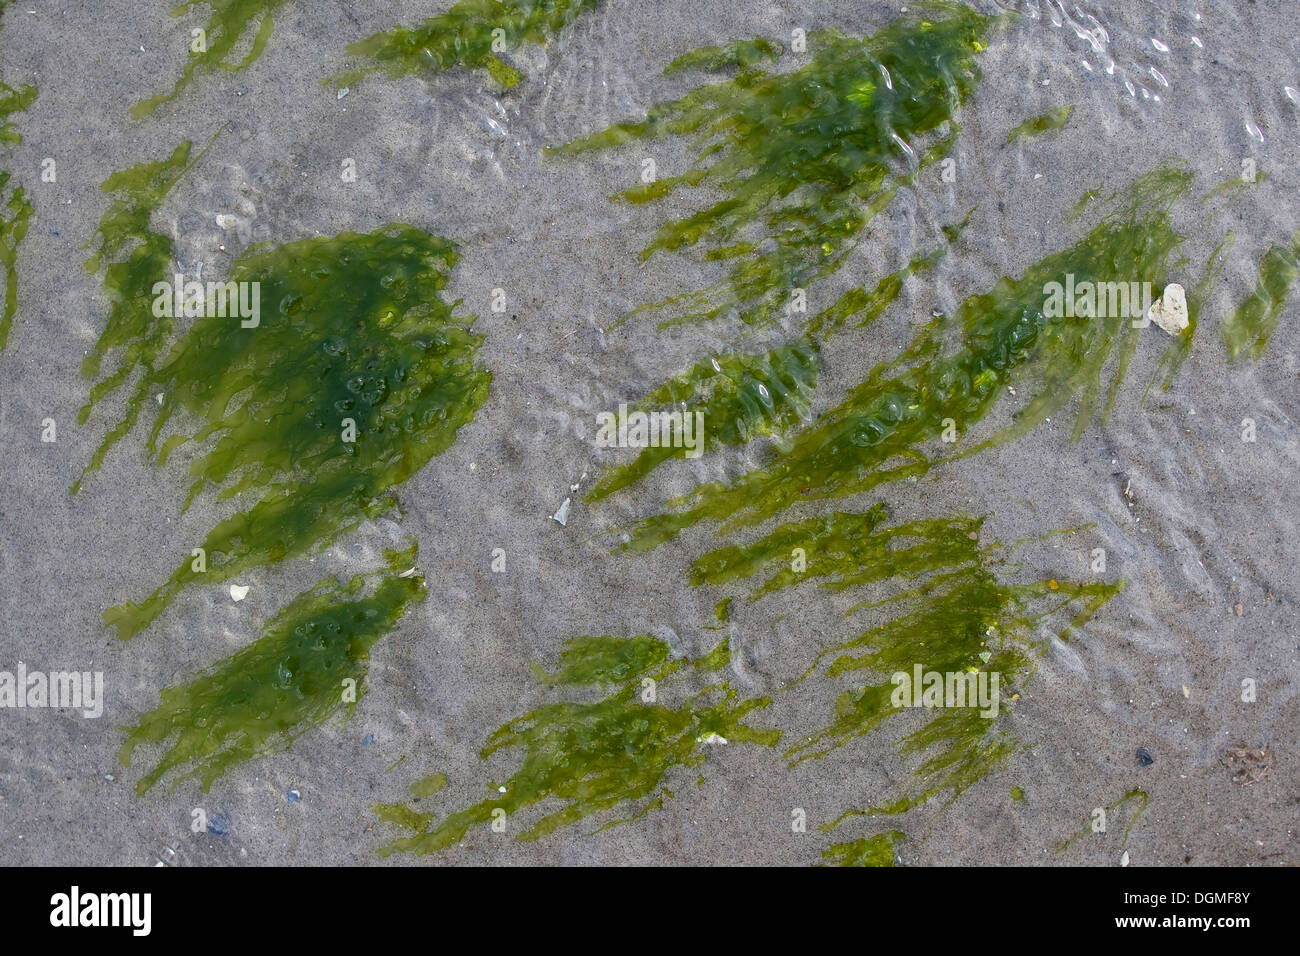 Le alghe, gutweed, gut-erbaccia, erba-kelp, laminaria, Flacher Darmtang, Grünalge, Tang, Enteromorpha compressa, Enteromorpha intestina Foto Stock